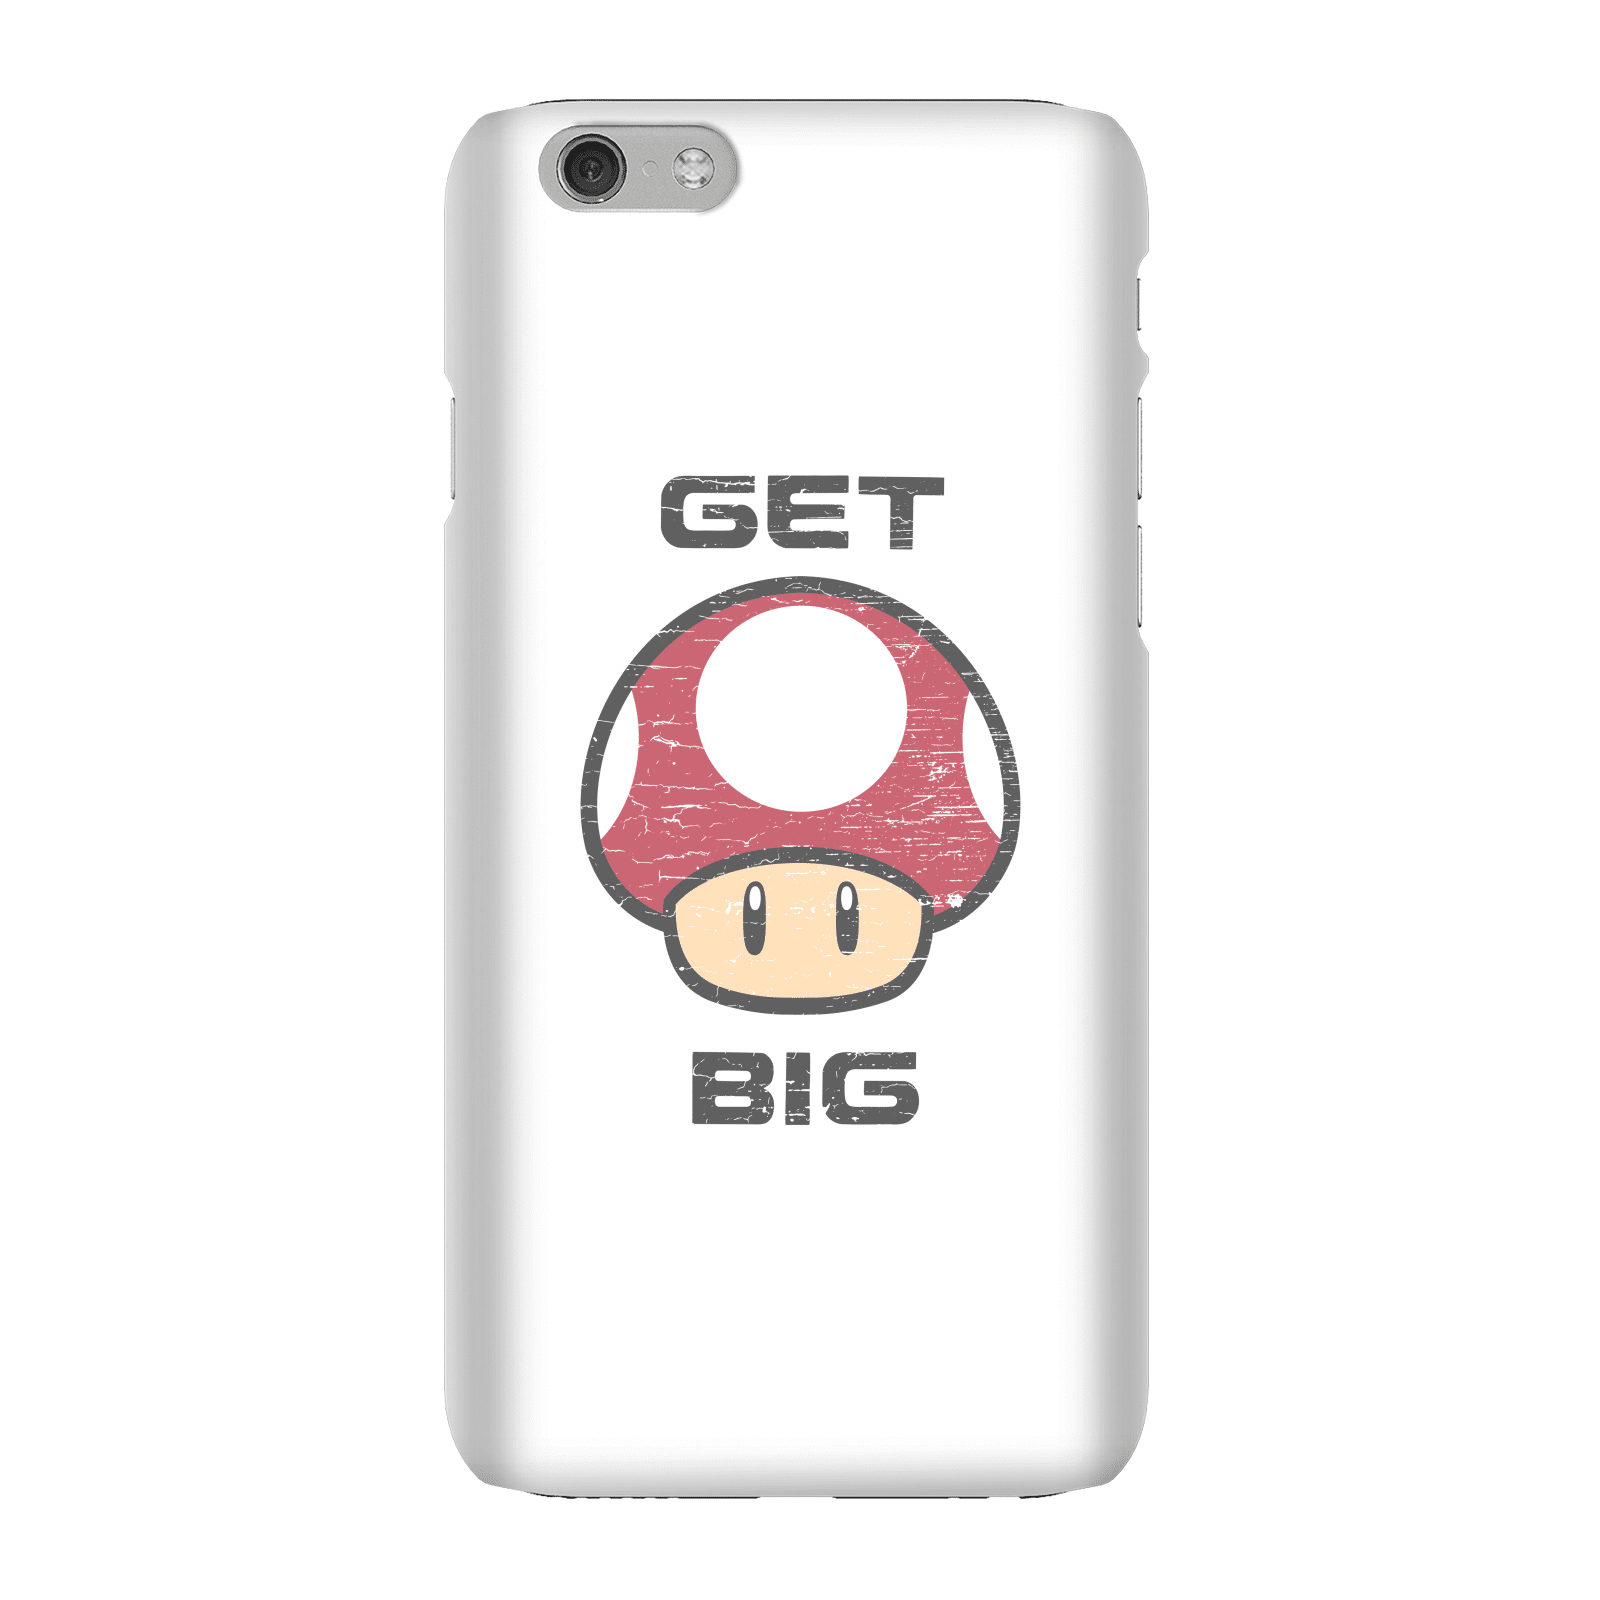 Nintendo Super Mario Get Big Mushroom Phone Case - iPhone 6 - Snap Case - Matte